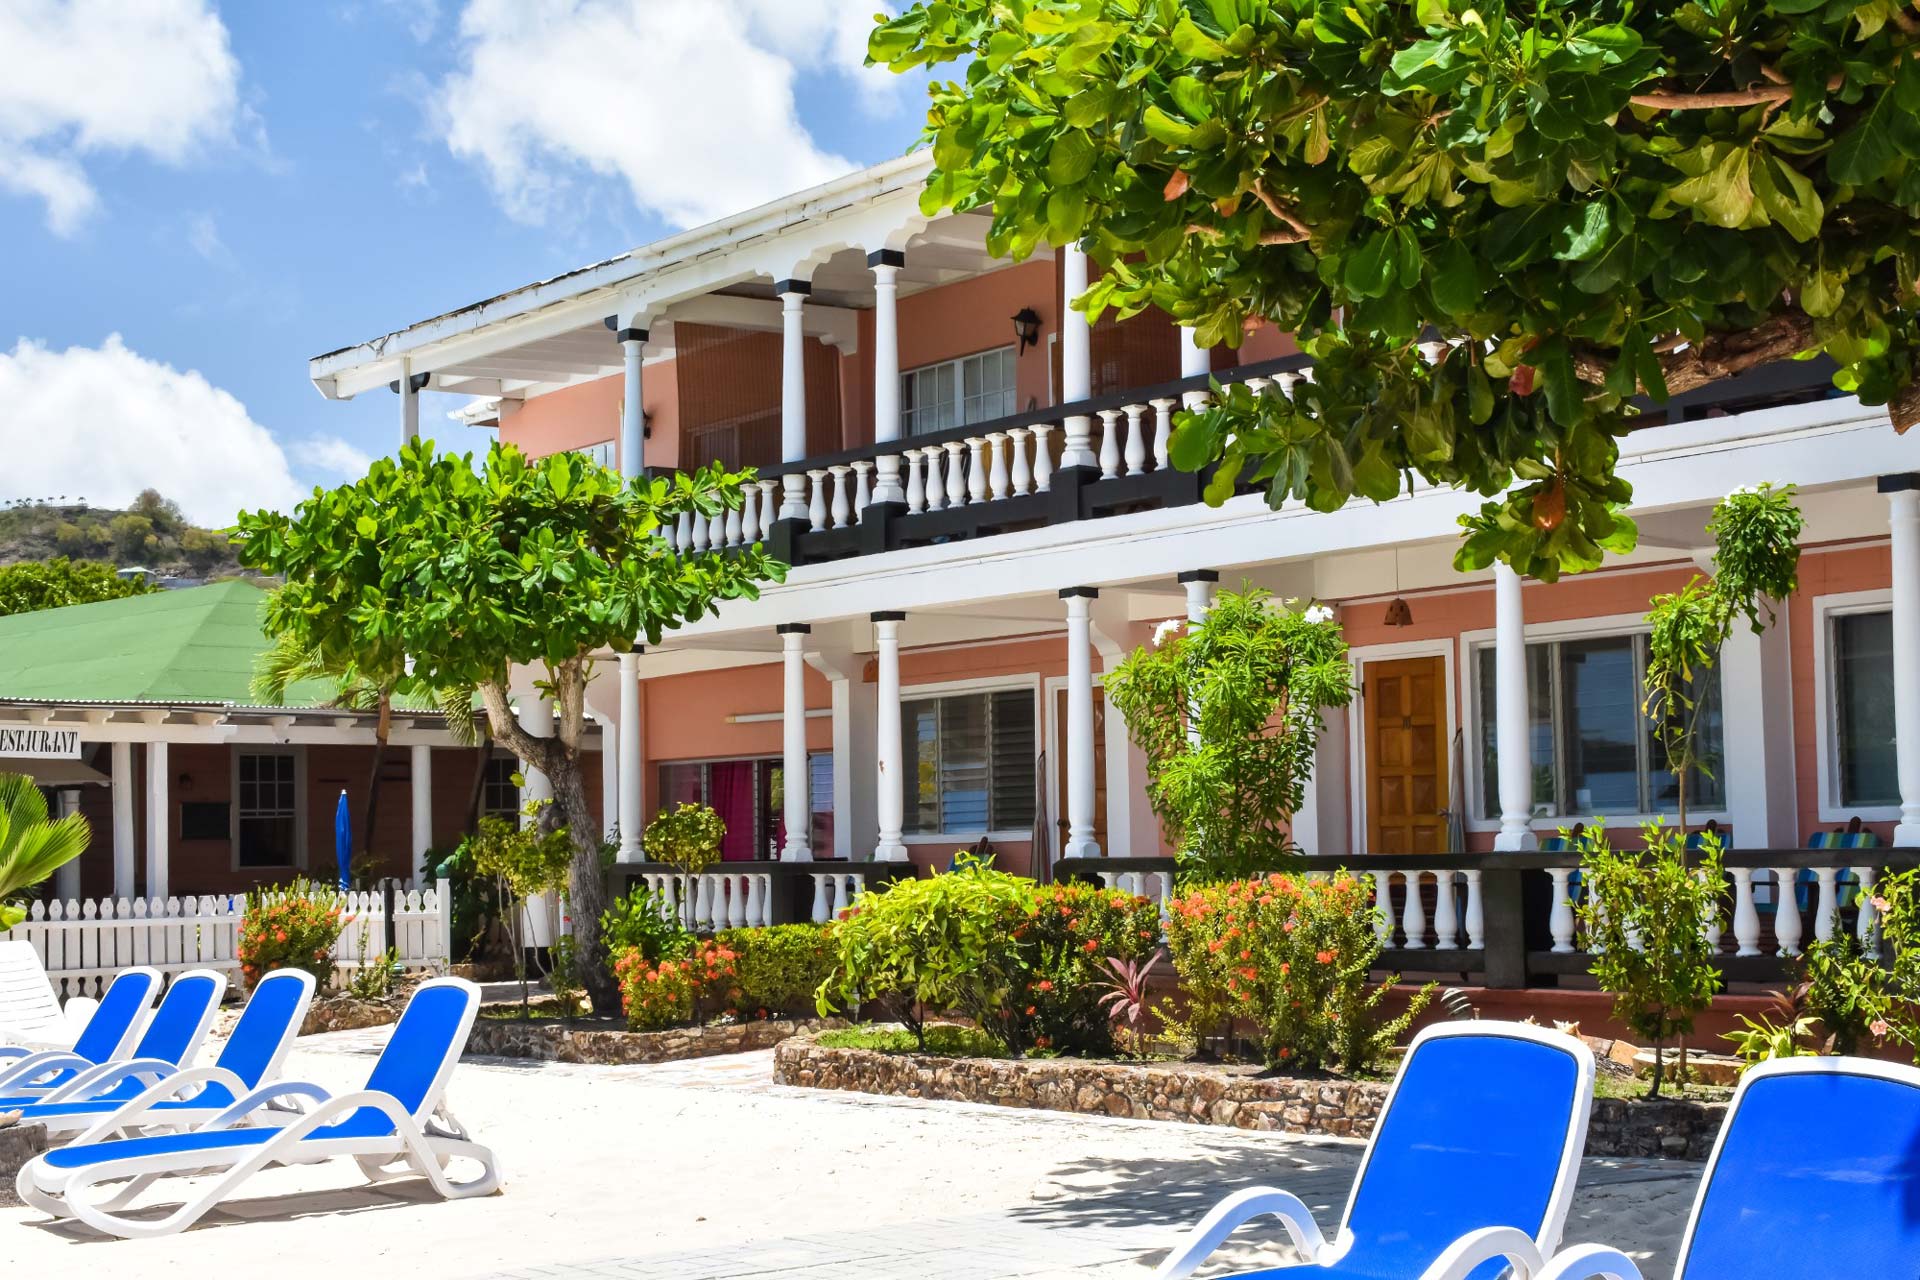 Catamaran Hotel decks beach side